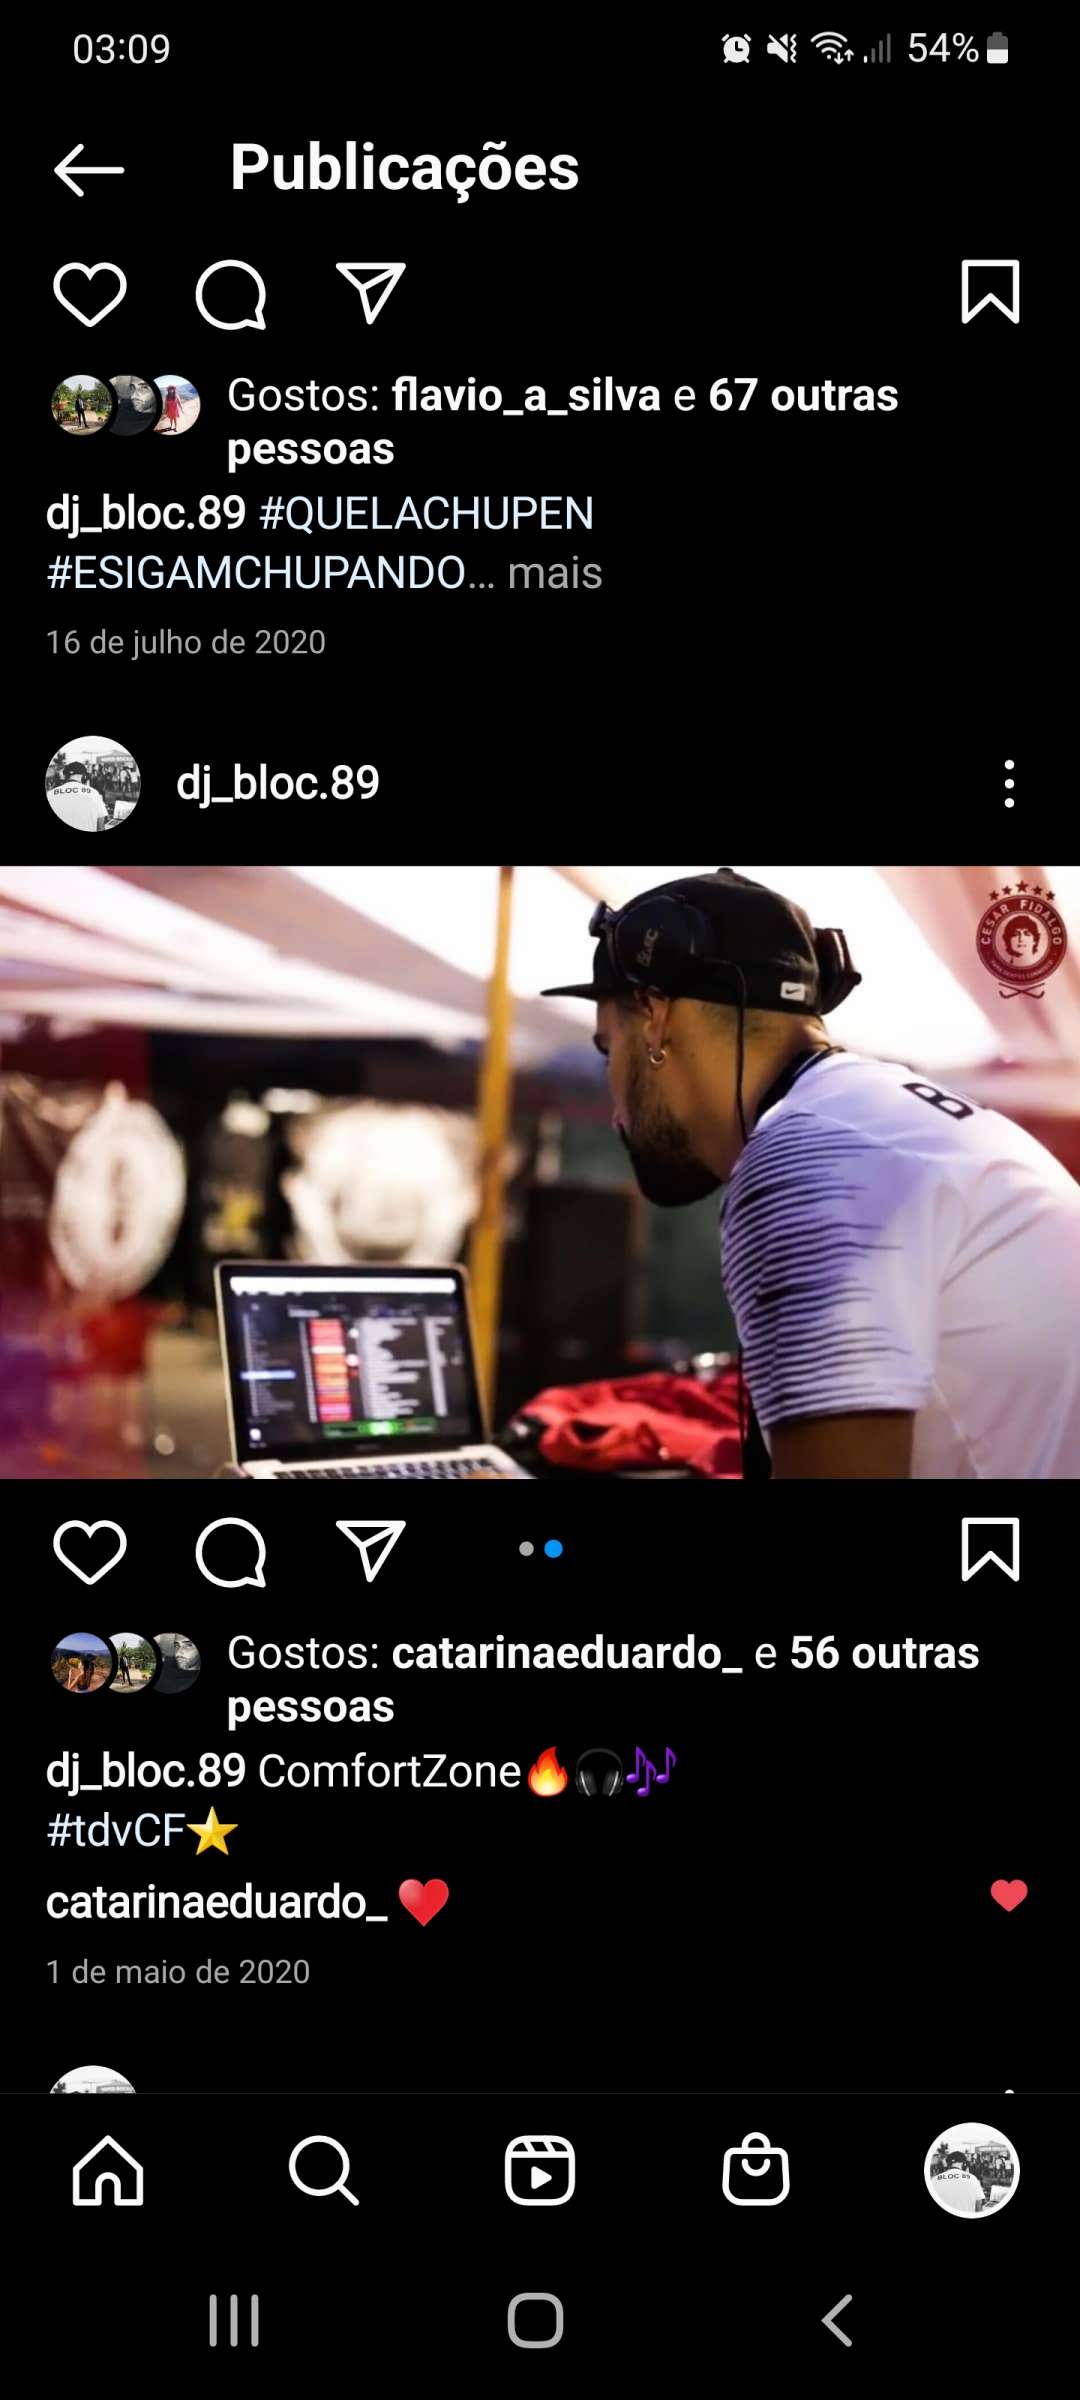 DJ BLOC.89 - Valongo - DJ